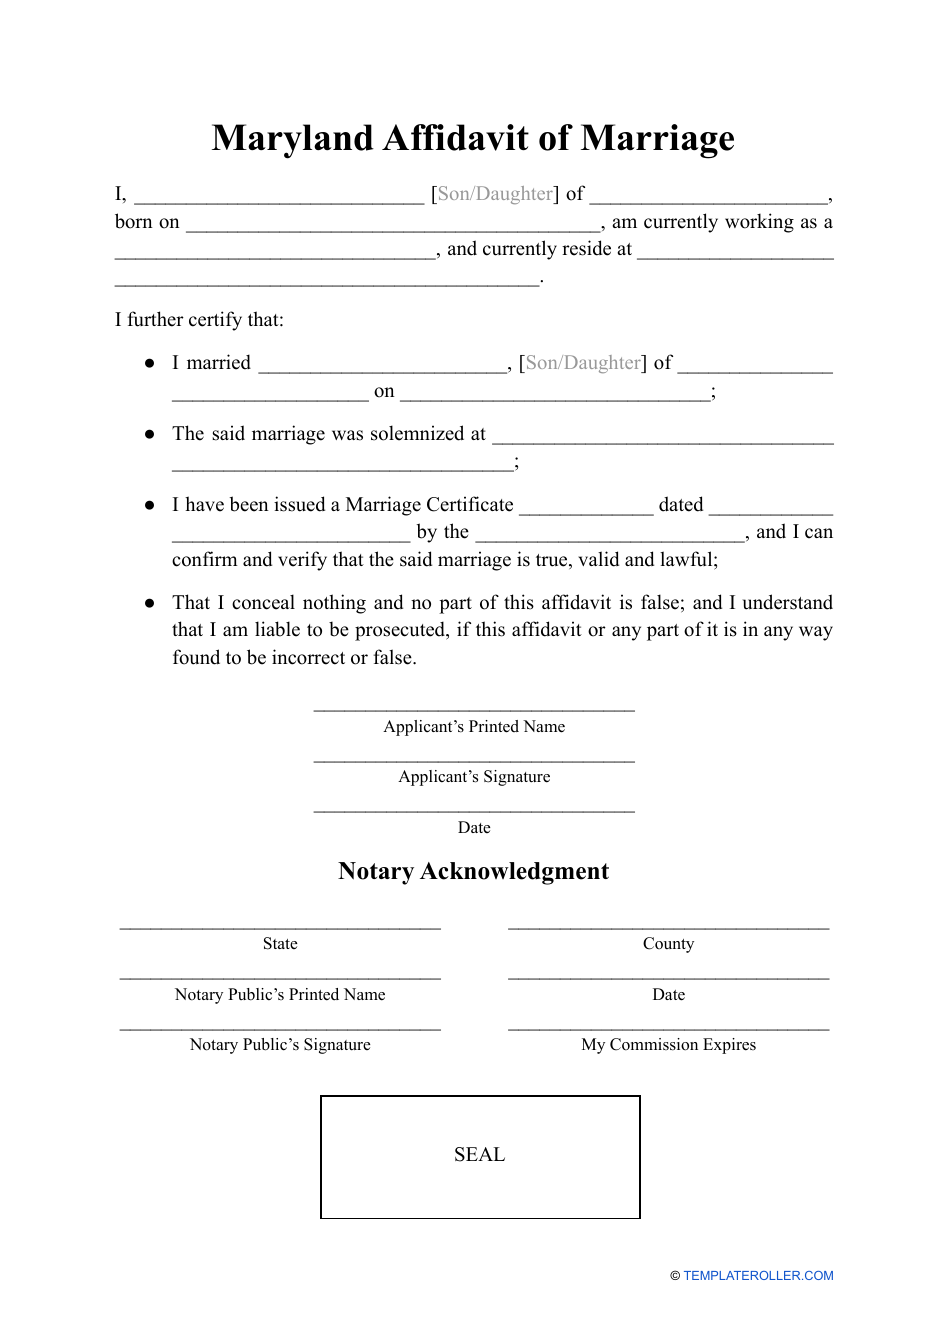 Affidavit of Marriage - Maryland, Page 1